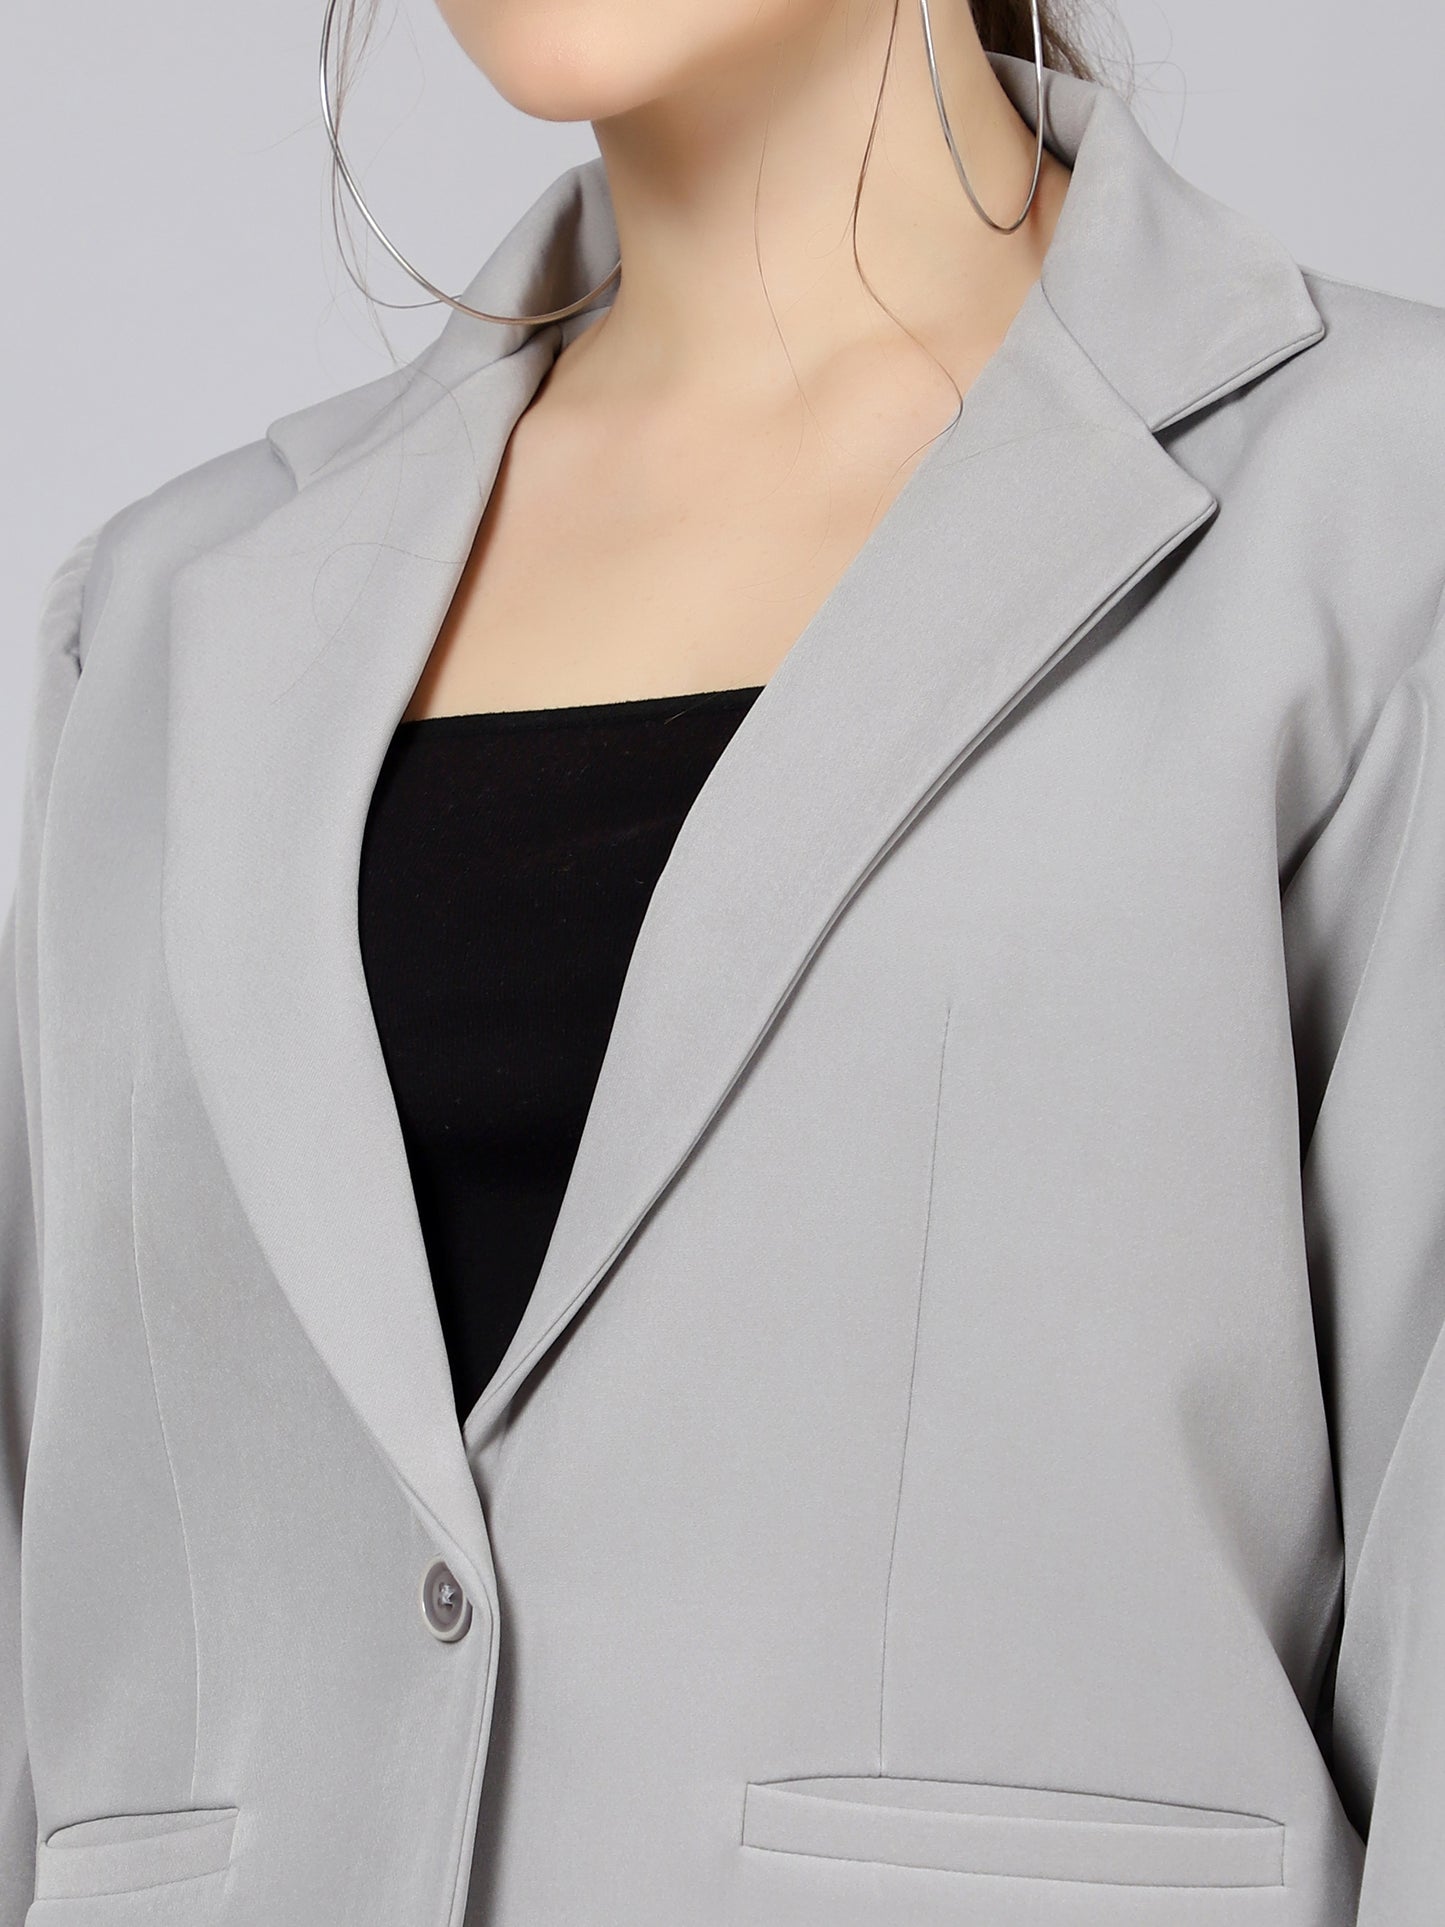 Swizzle Stick Lapel Collar Blazer (Only blazer) - Grey